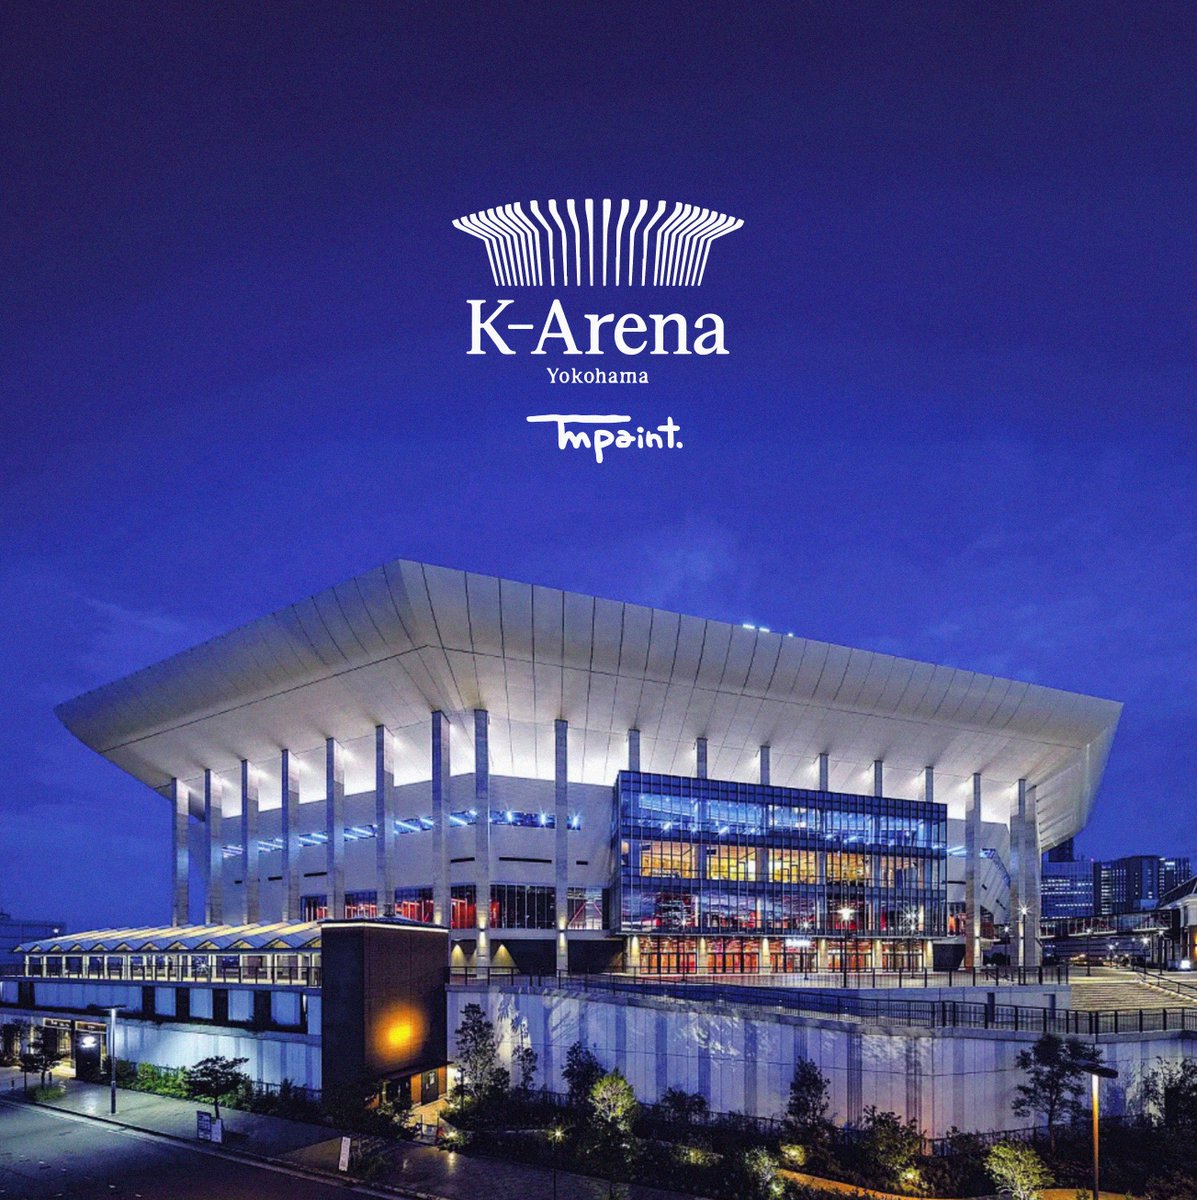 2023年に横浜にオープンしましたコンサートホールK-ARENAのK-ARENA SHOP限定Tシャツのデザインをさせていただきました⛳️ 🏌️‍♀️
通販はこちら🏌️‍♀️
k-arena-shoponline.com/?page=2